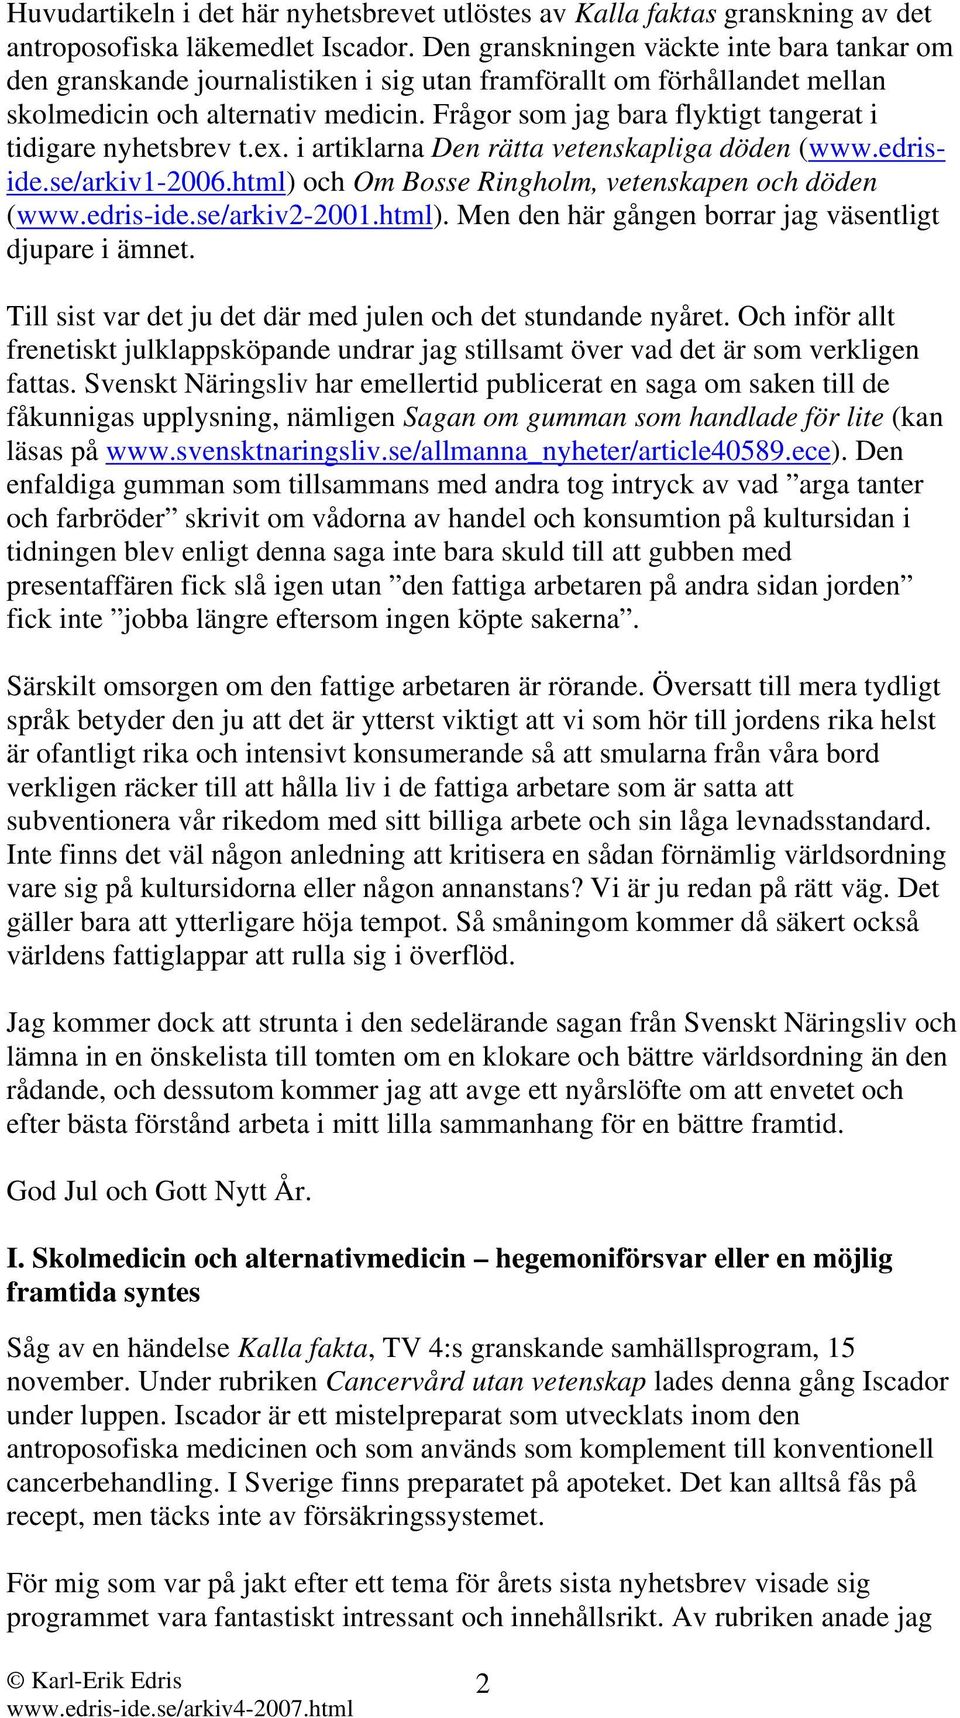 Frågor som jag bara flyktigt tangerat i tidigare nyhetsbrev t.ex. i artiklarna Den rätta vetenskapliga döden (www.edriside.se/arkiv1-2006.html) och Om Bosse Ringholm, vetenskapen och döden (www.